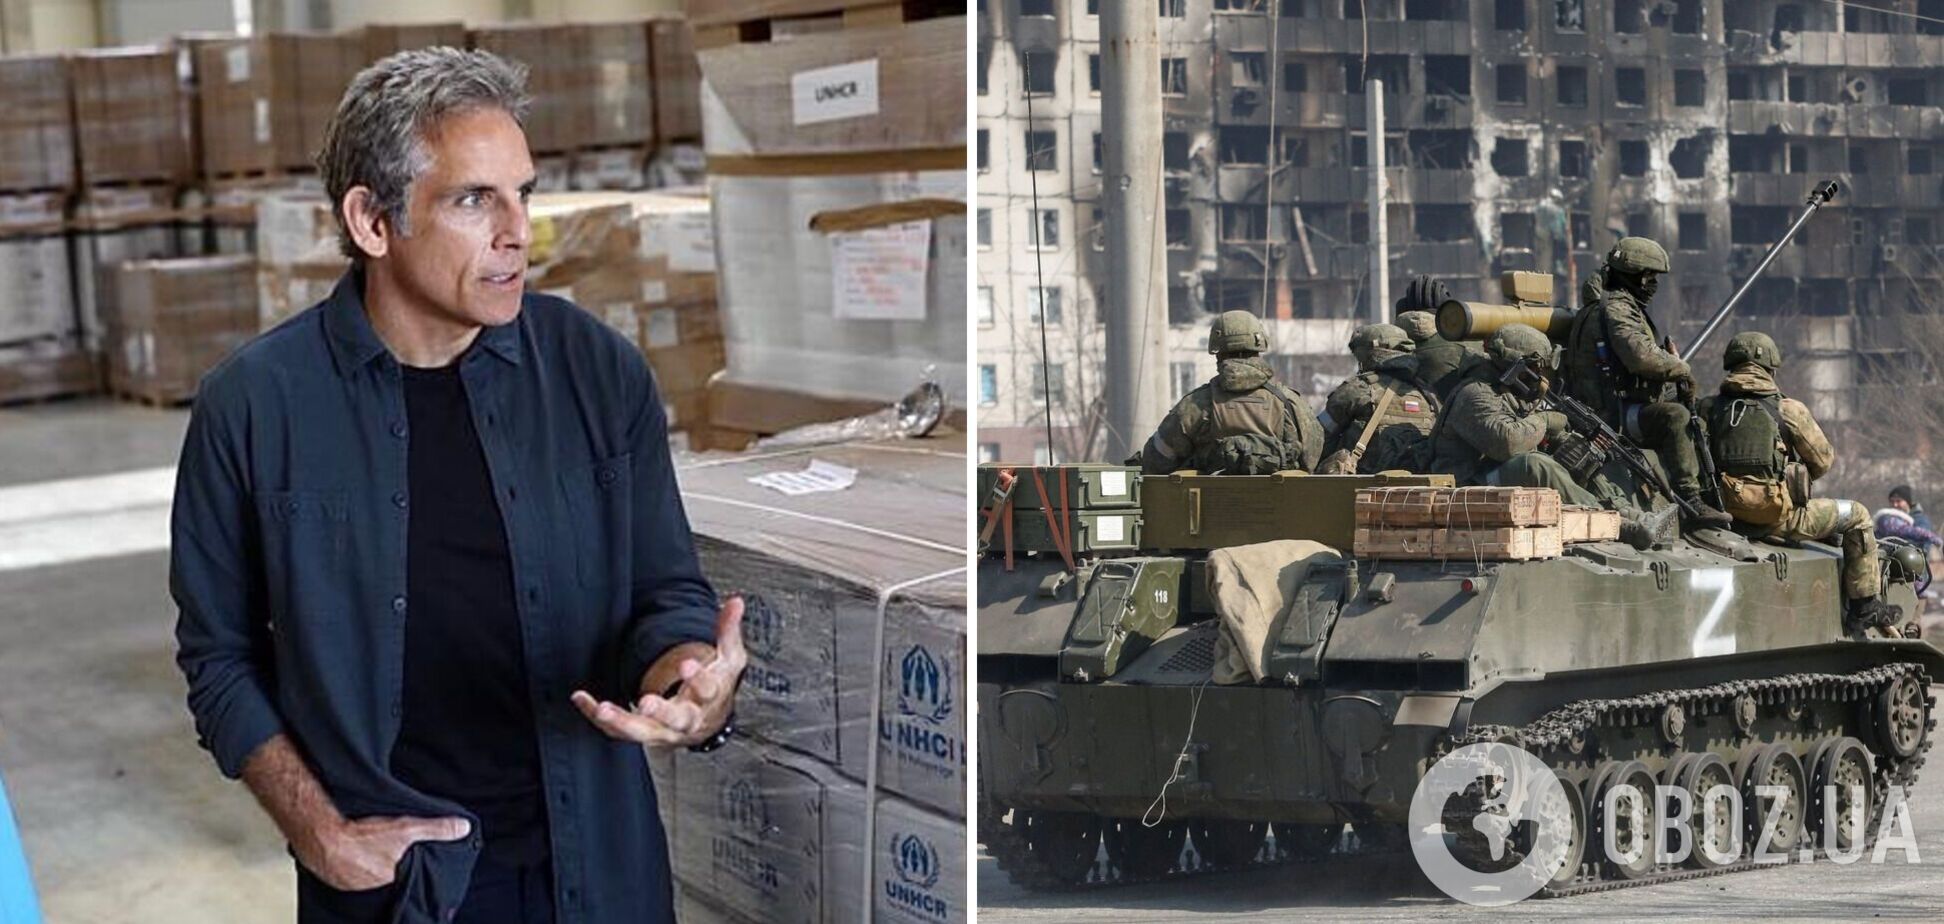 Бена Стиллера шокировало то, что оккупанты сделали с Украиной: реальная война – это масштабнее любого фильма